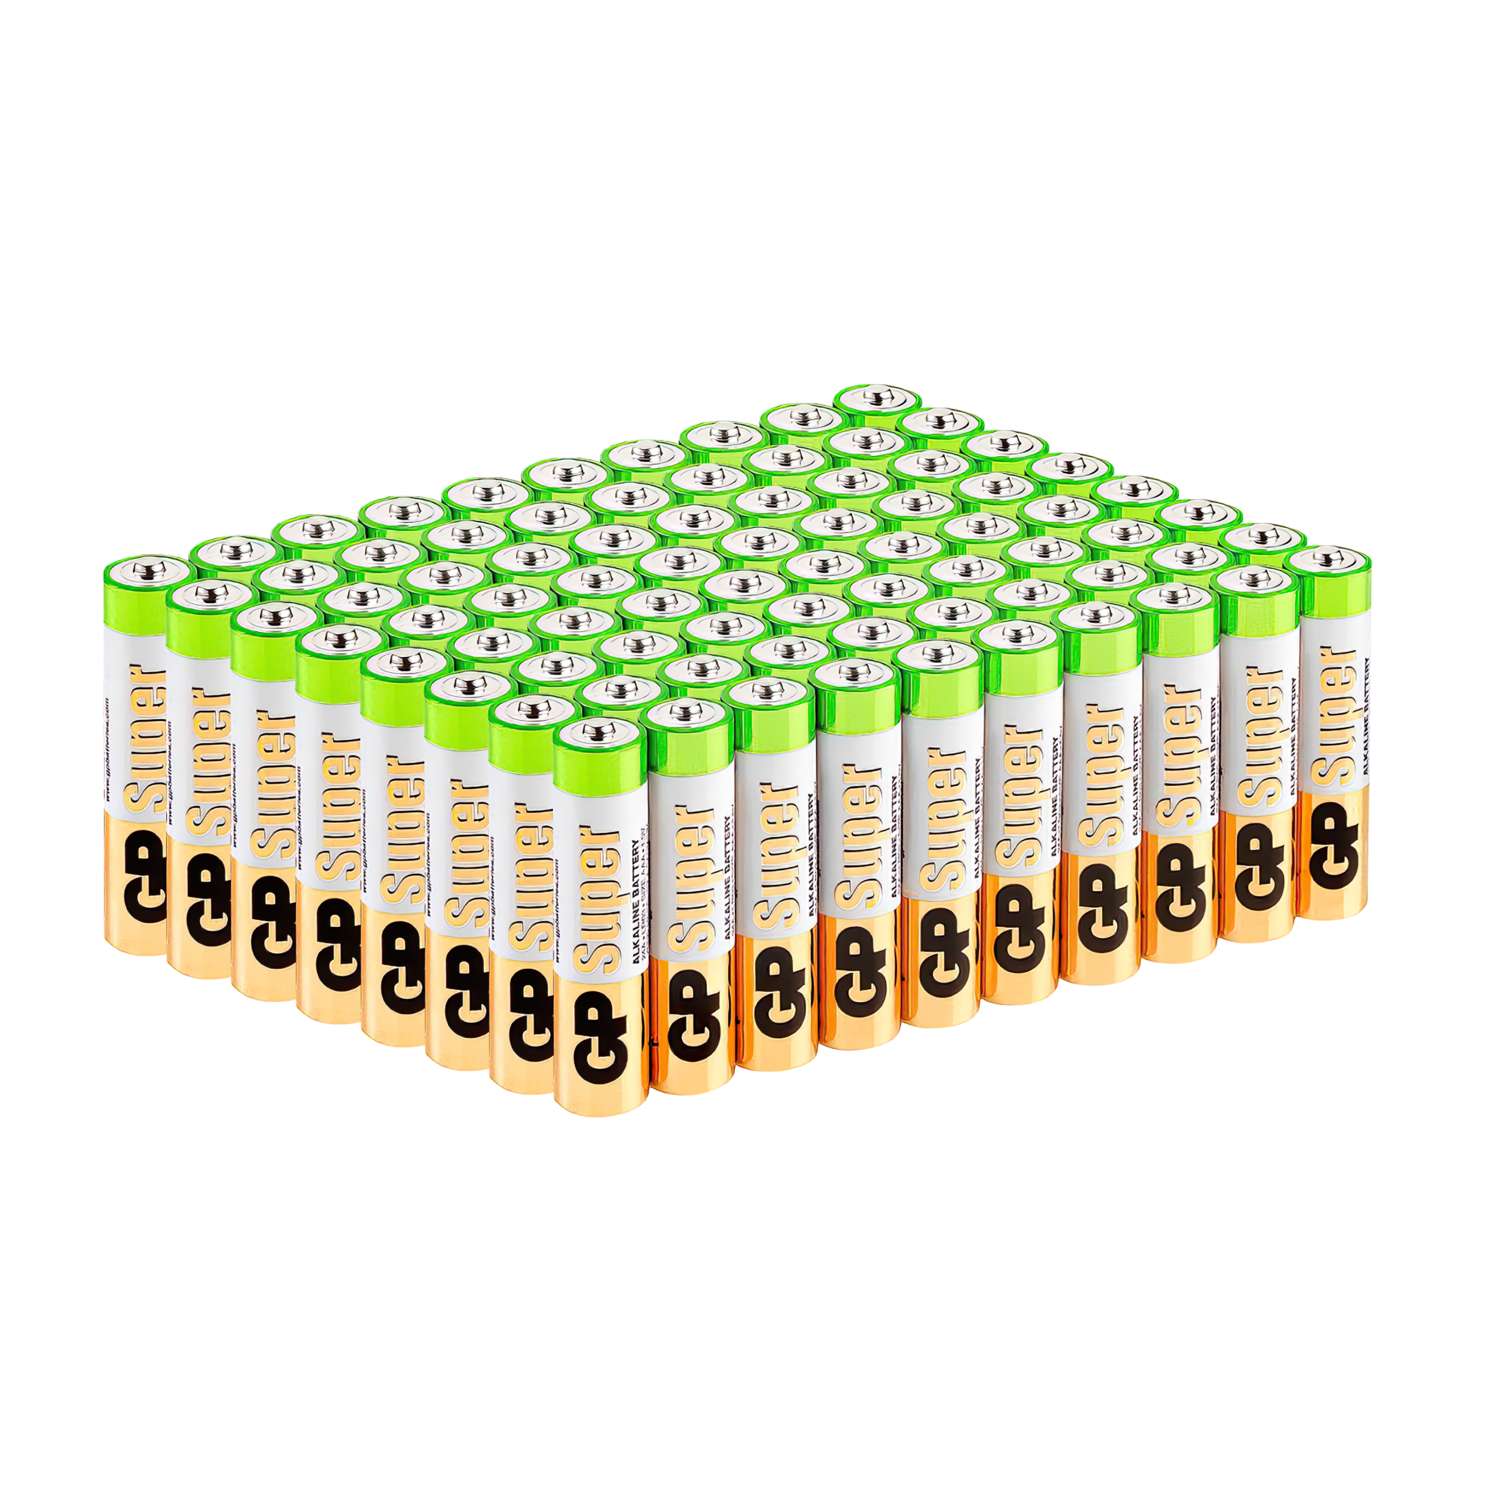 Батарейки АAA GP (мизинцы) 80 штук в упаковке - фото 2